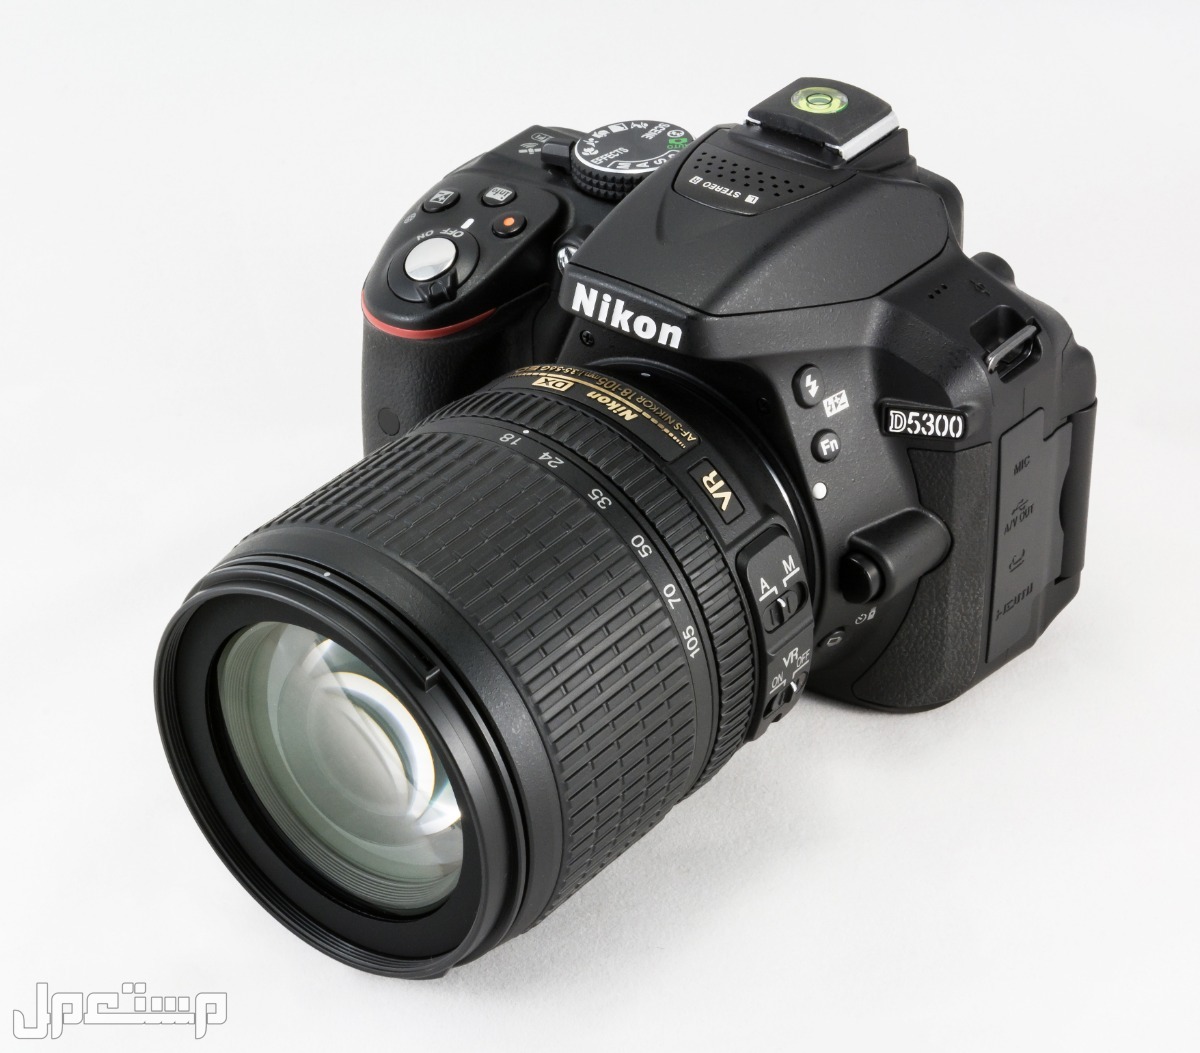 مواصفات ومميزات وأسعار أفضل أنواع كاميرات نيكون للمحترفين كاميرا Nikon D5300